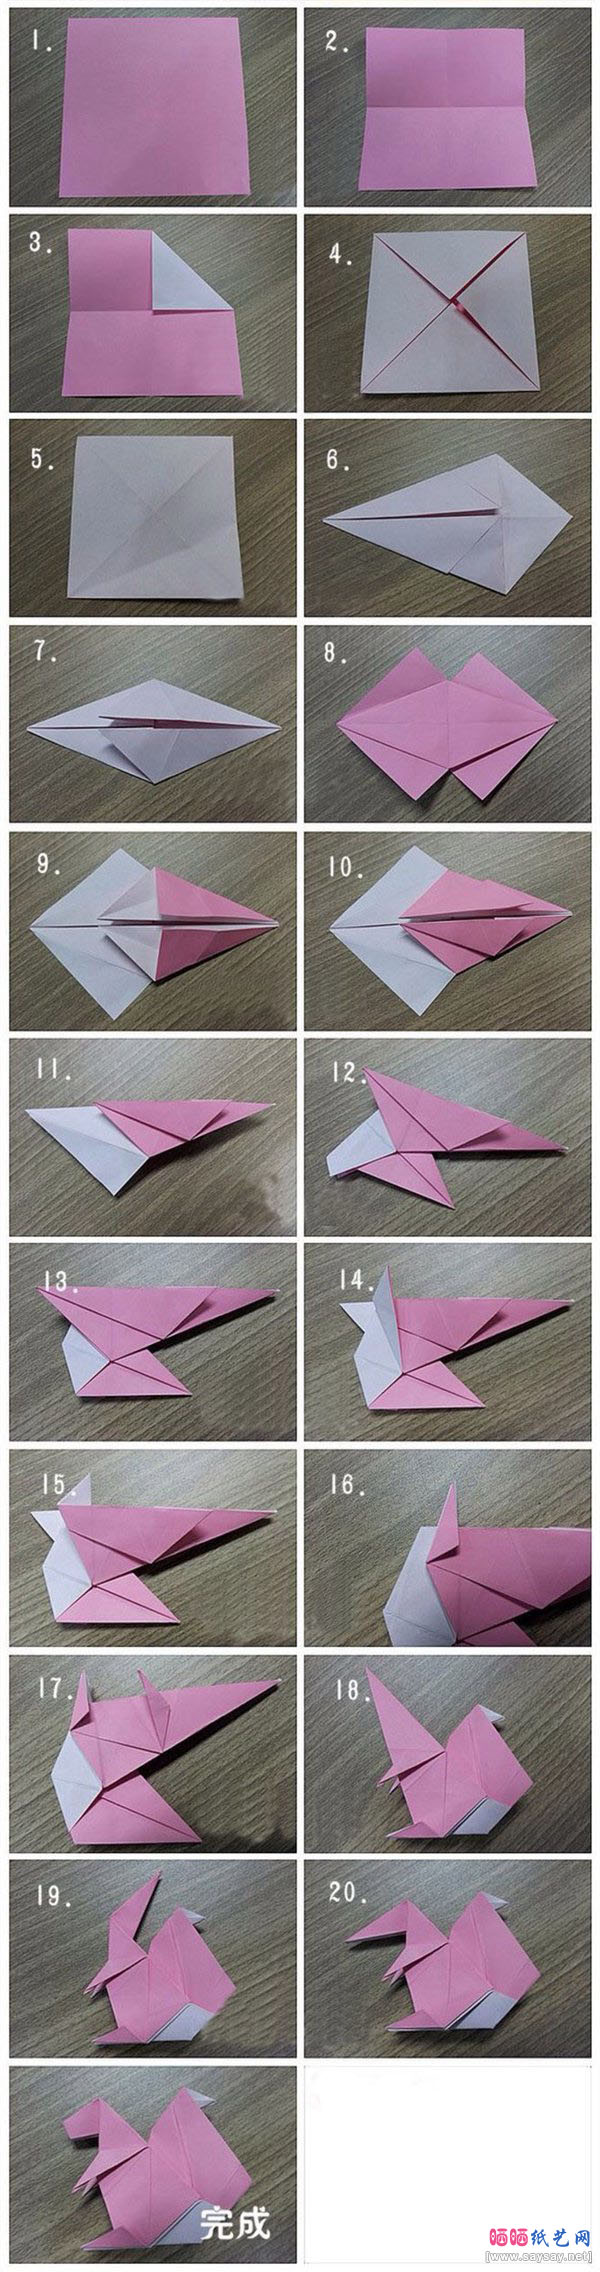 可爱的小松鼠折纸方法教程